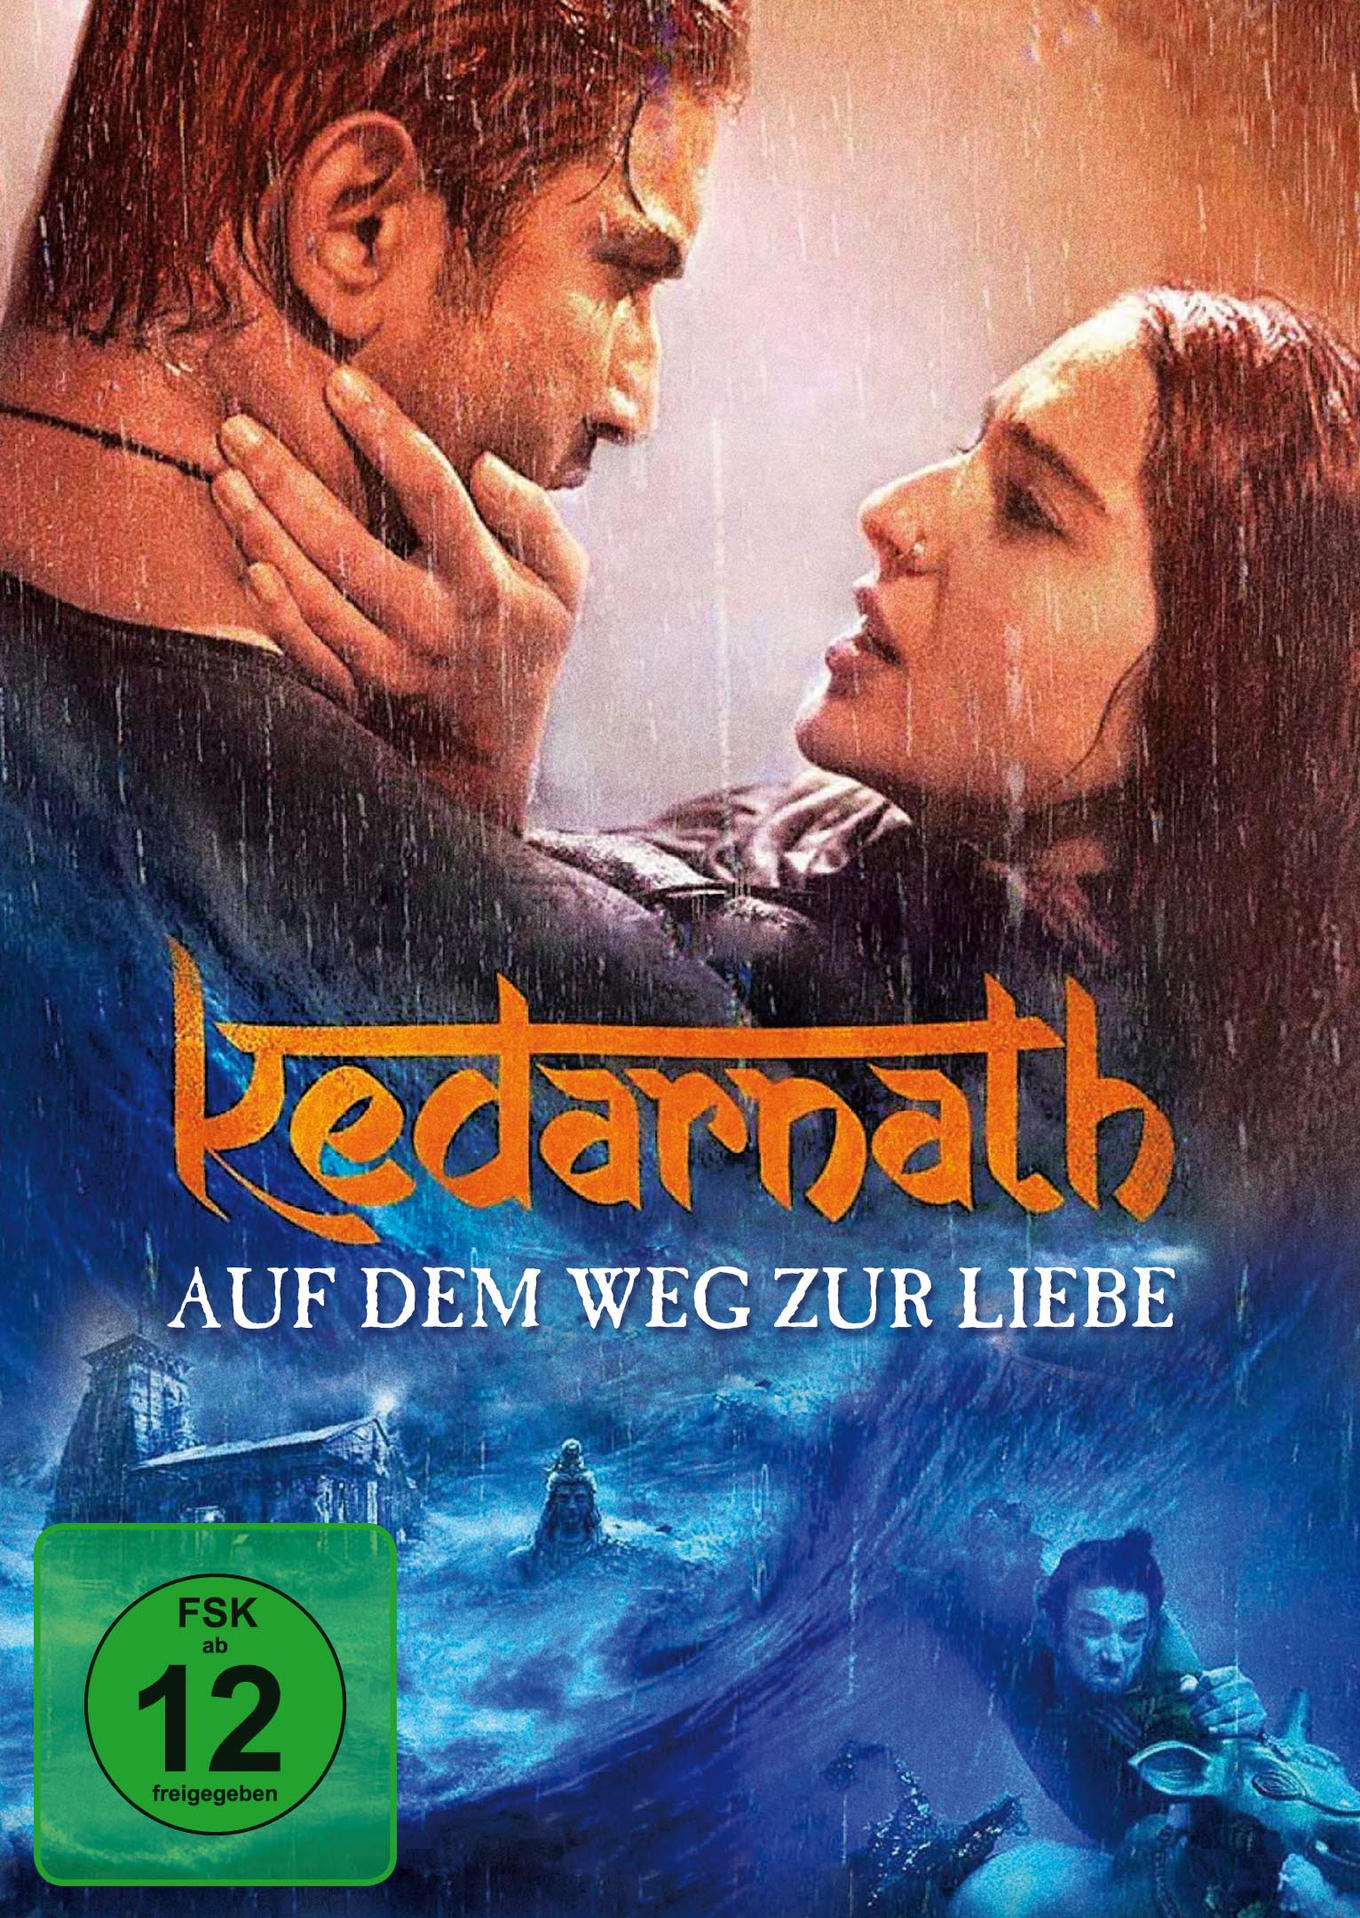 Kedarnath zur Auf Liebe - DVD dem Weg